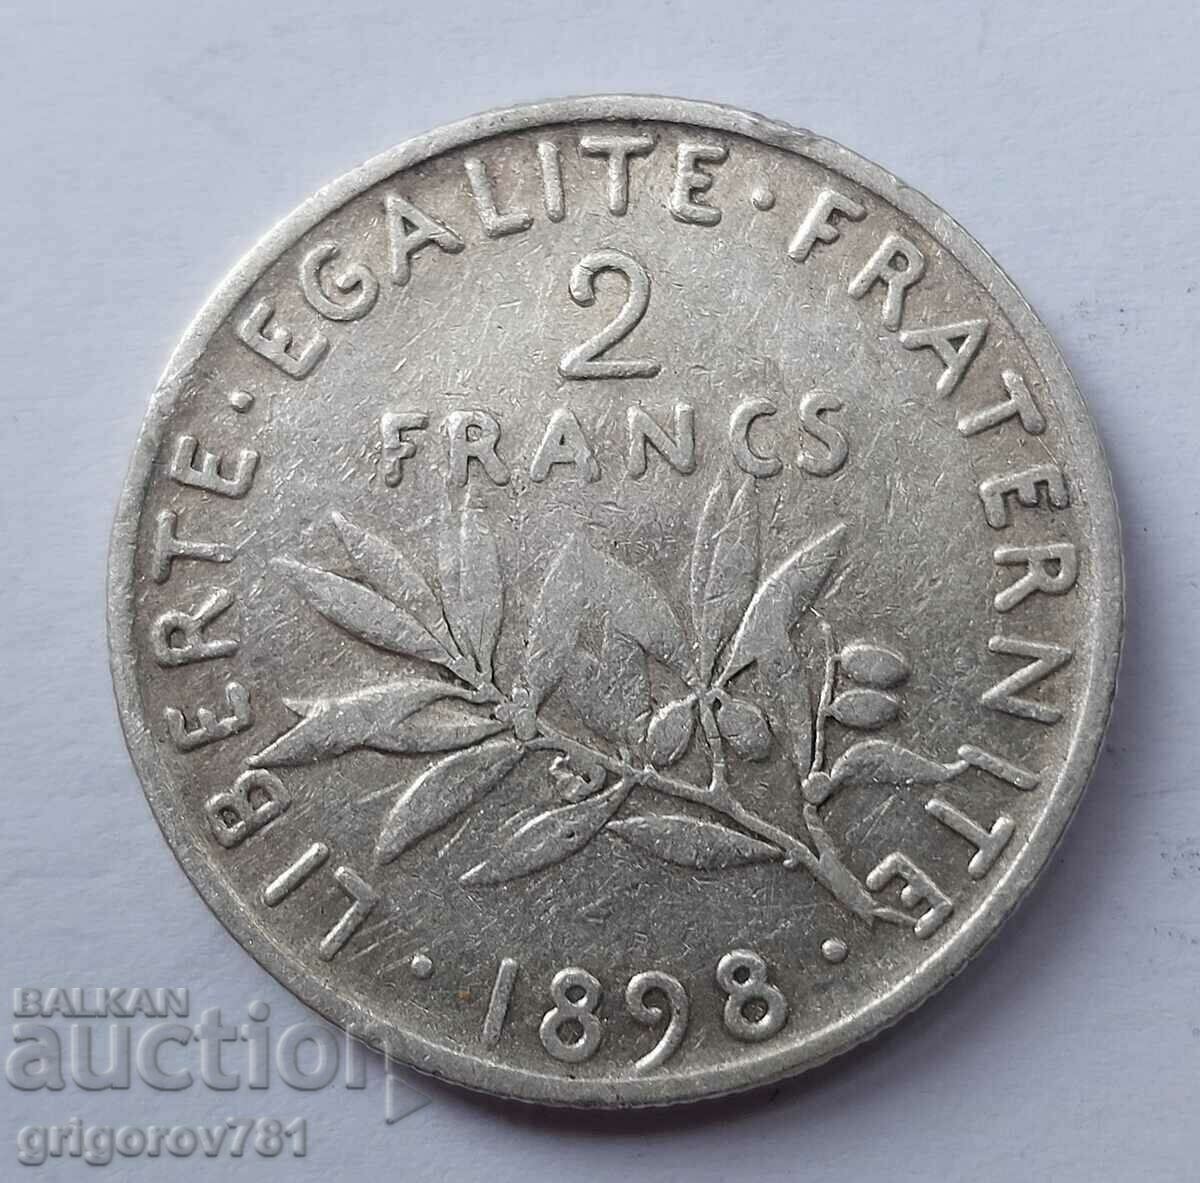 Ασημένιο 2 φράγκα Γαλλία 1898 - ασημένιο νόμισμα №22